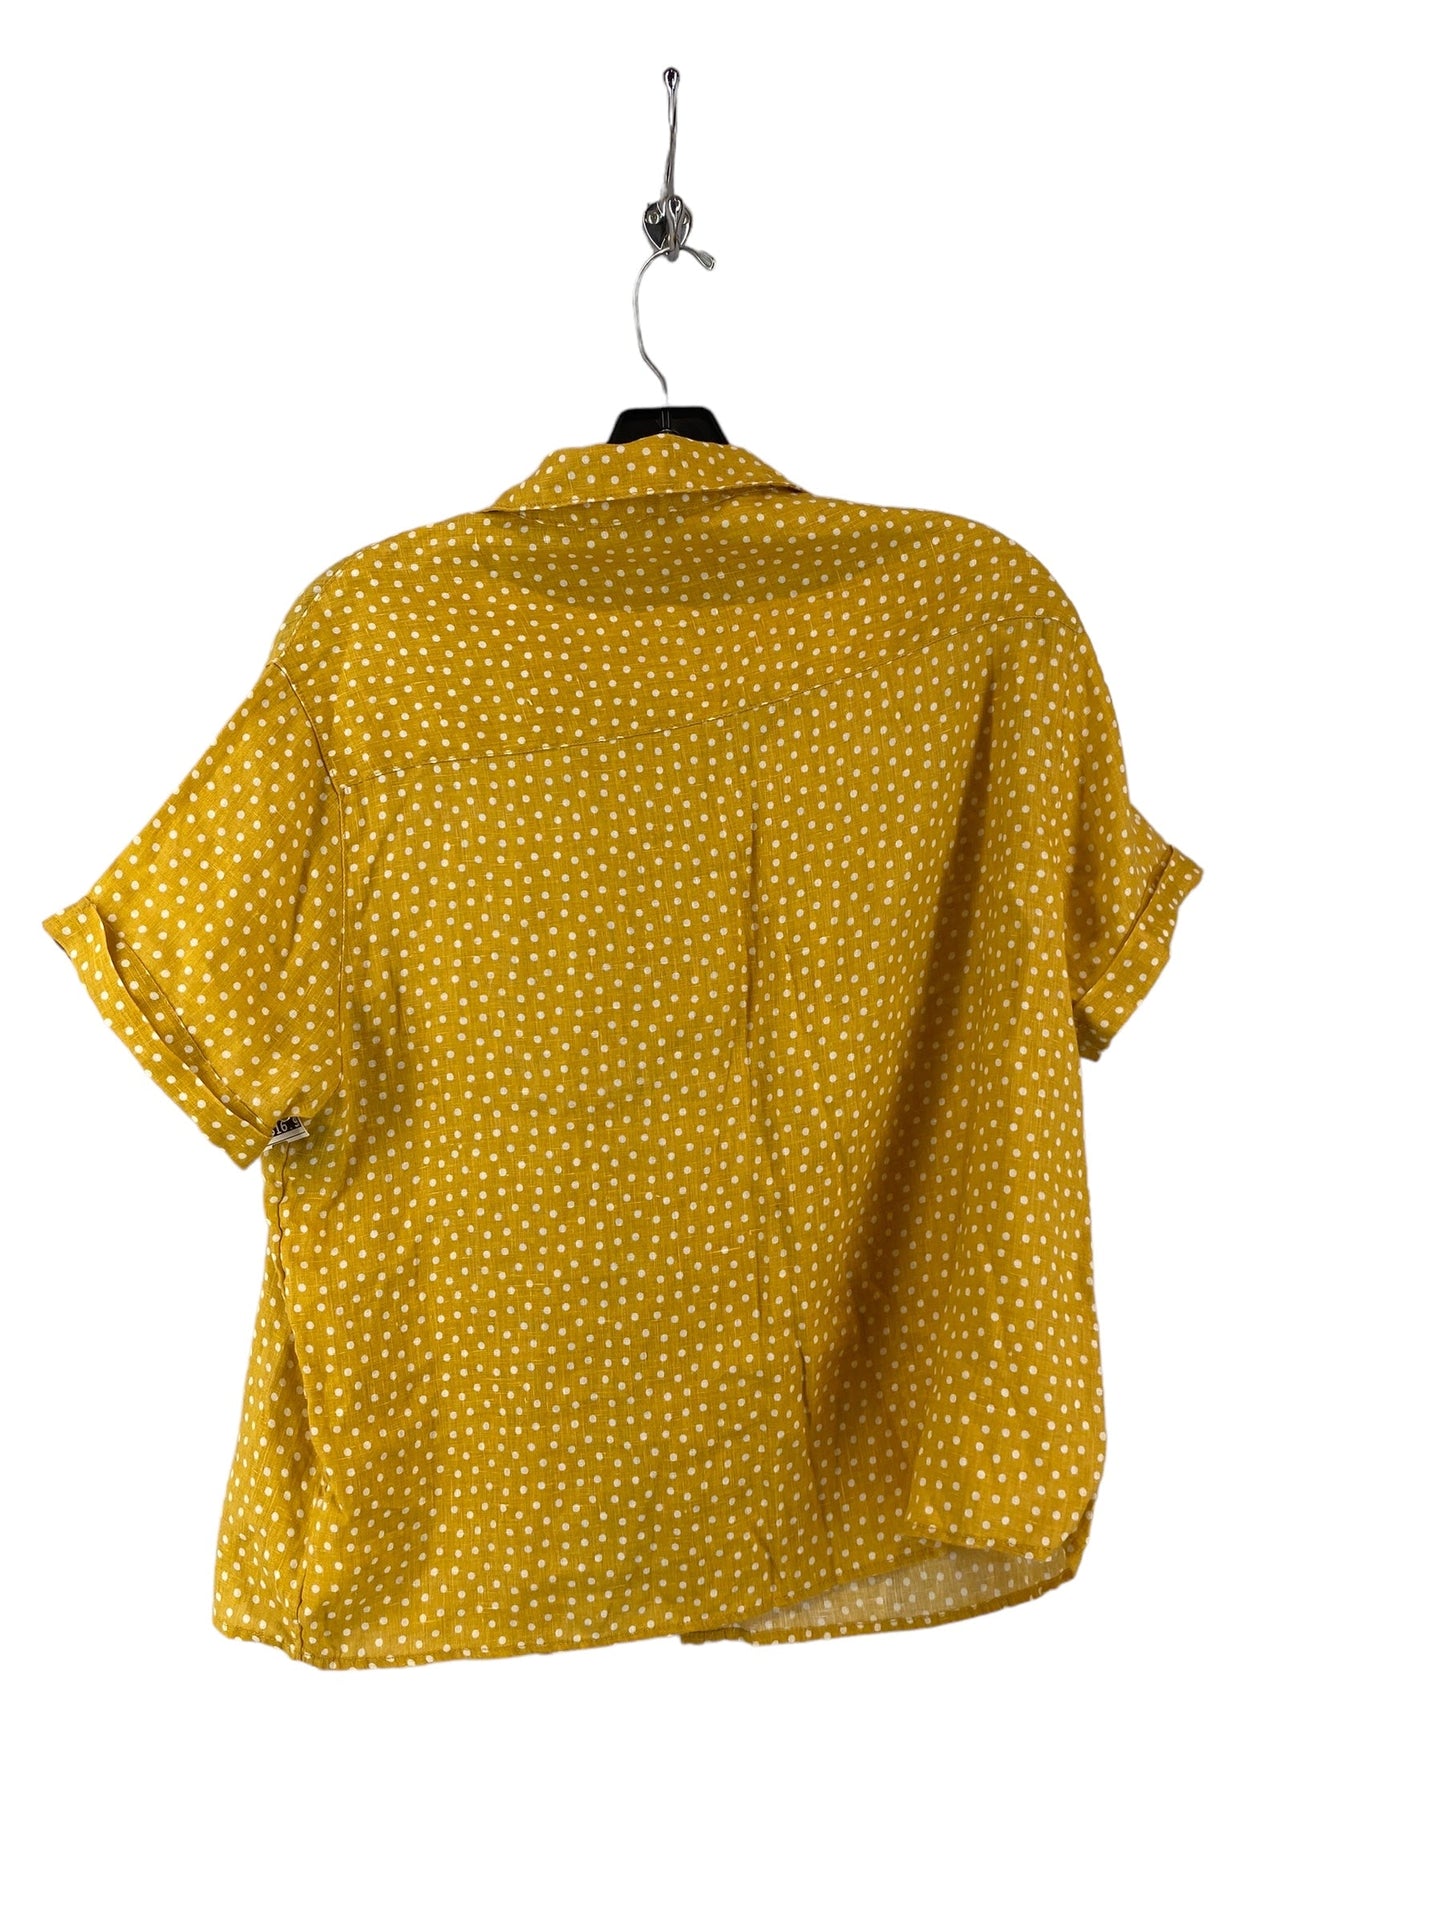 Yellow Top Short Sleeve Rachel Zoe, Size S